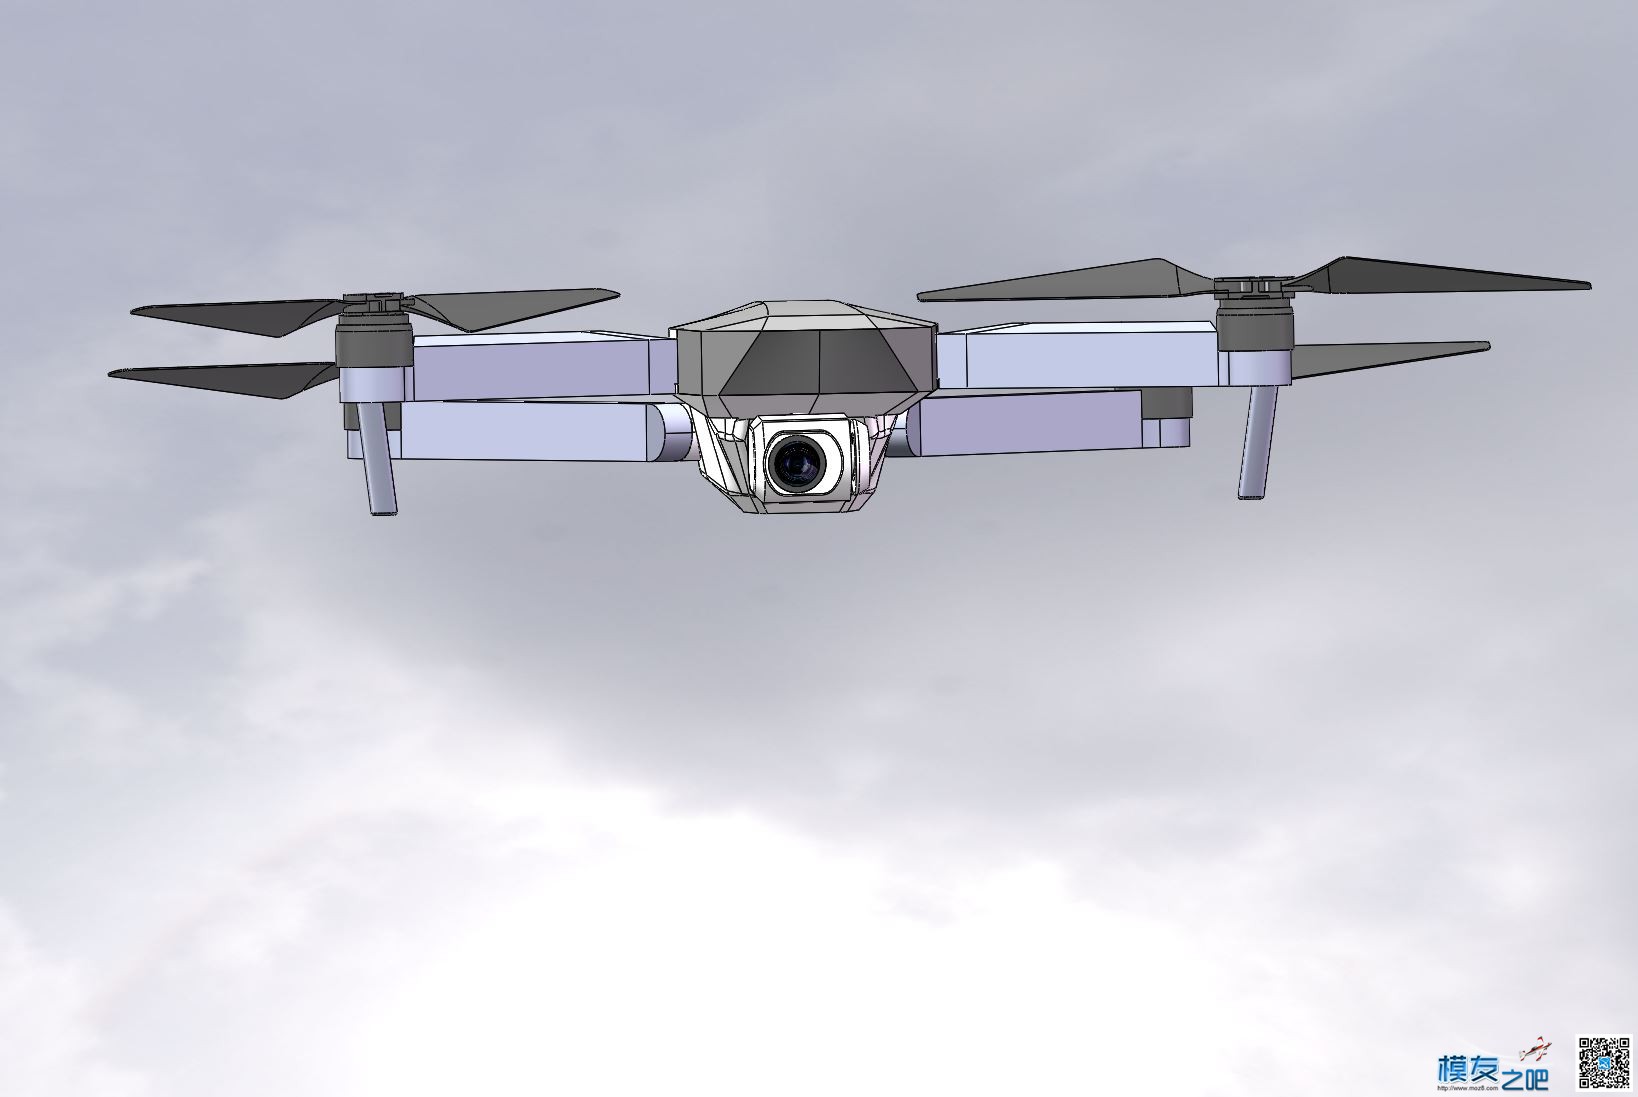 自制大疆mavic折叠无人机 全新设计 慢更 无人机,穿越机,电池,云台,图传 作者:zoney 6393 